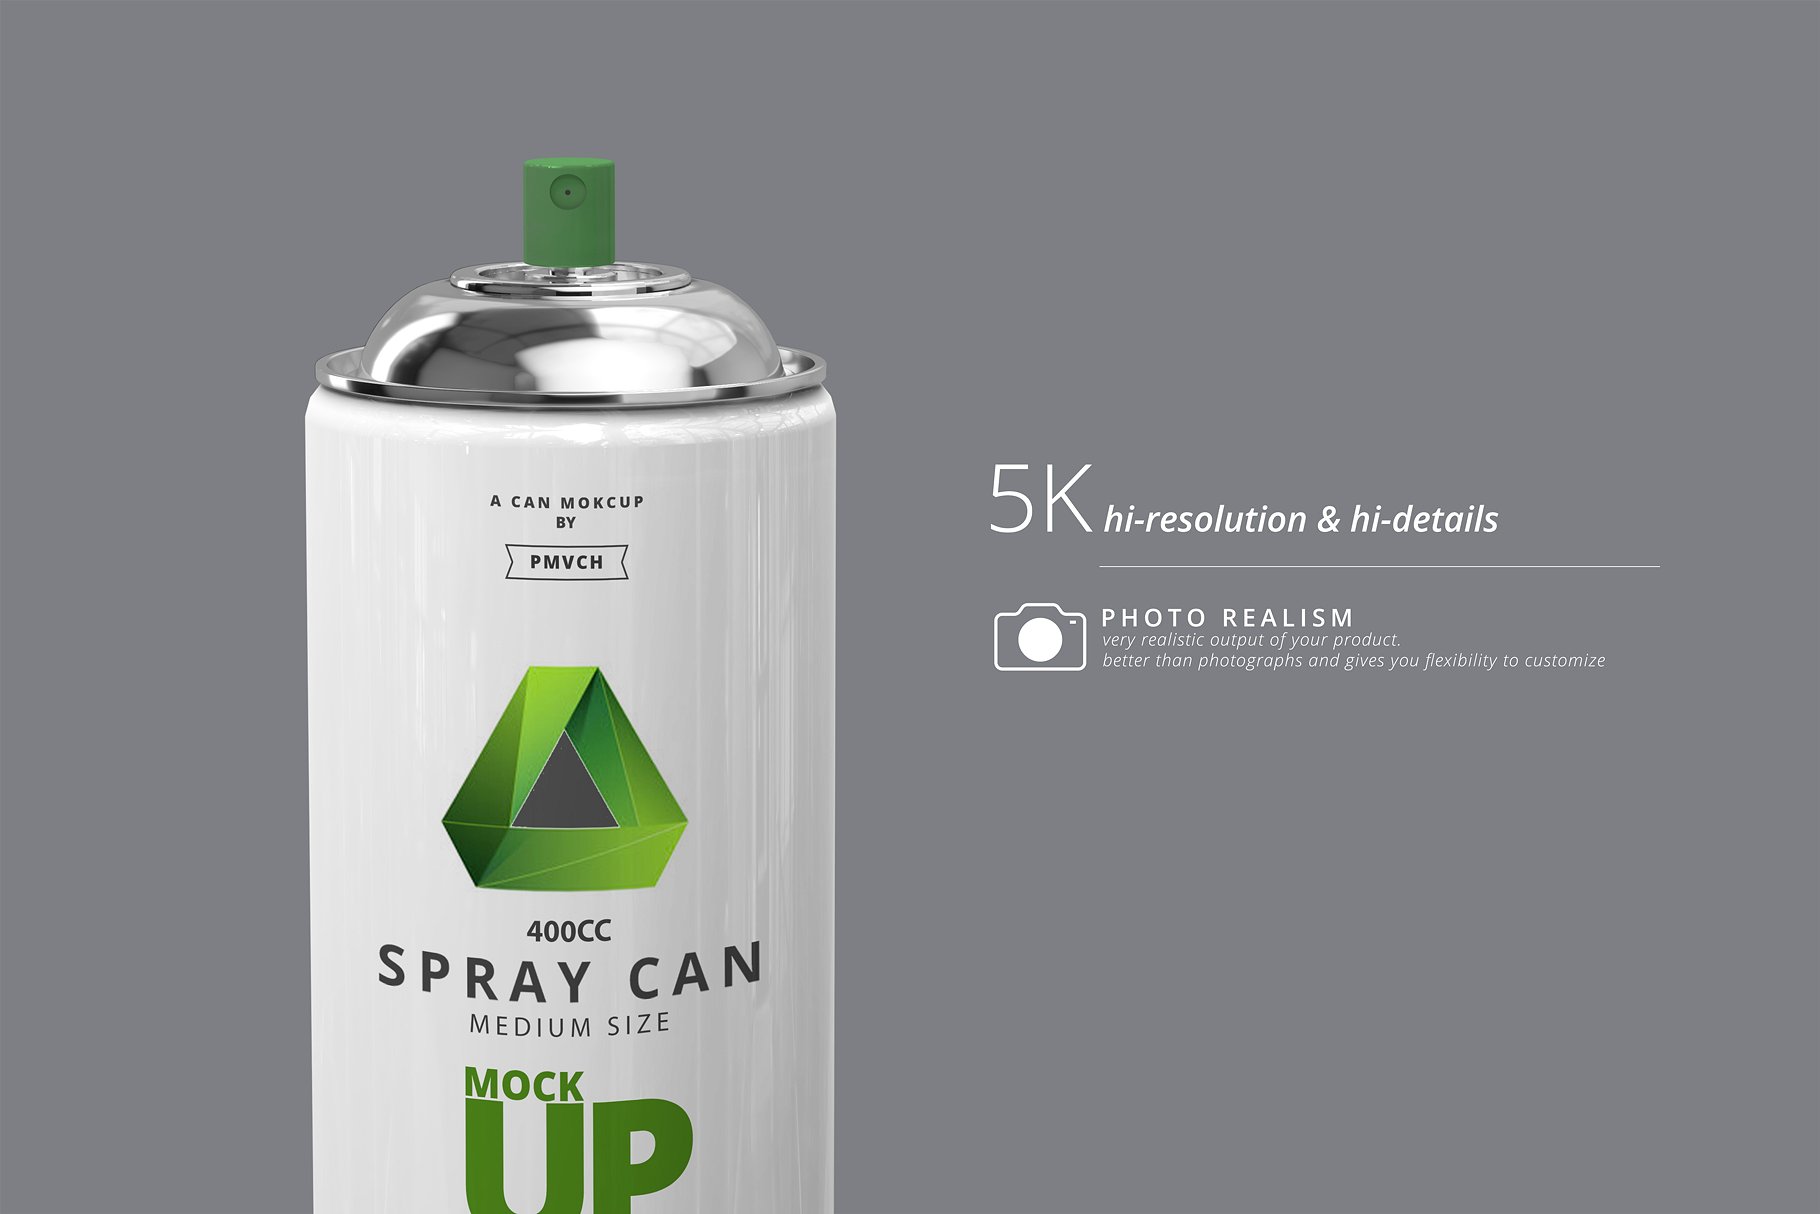 中等尺寸的喷雾罐展示样机 Spray Can Mockup – Medium Size [psd]插图(10)